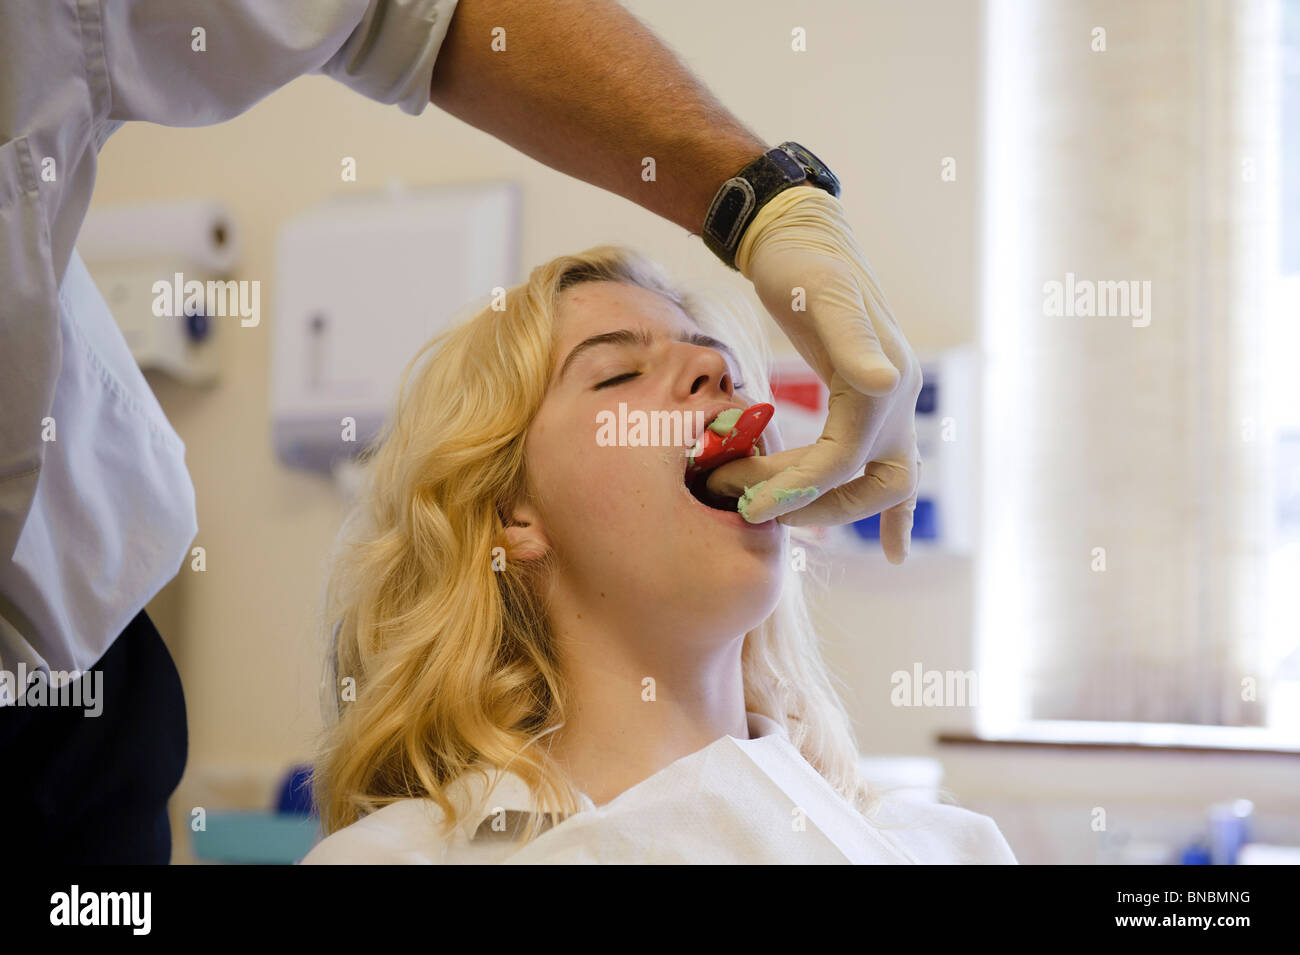 Un servicio nacional de salud ortodoncista teniendo un elenco de una adolescente los dientes, REINO UNIDO Foto de stock